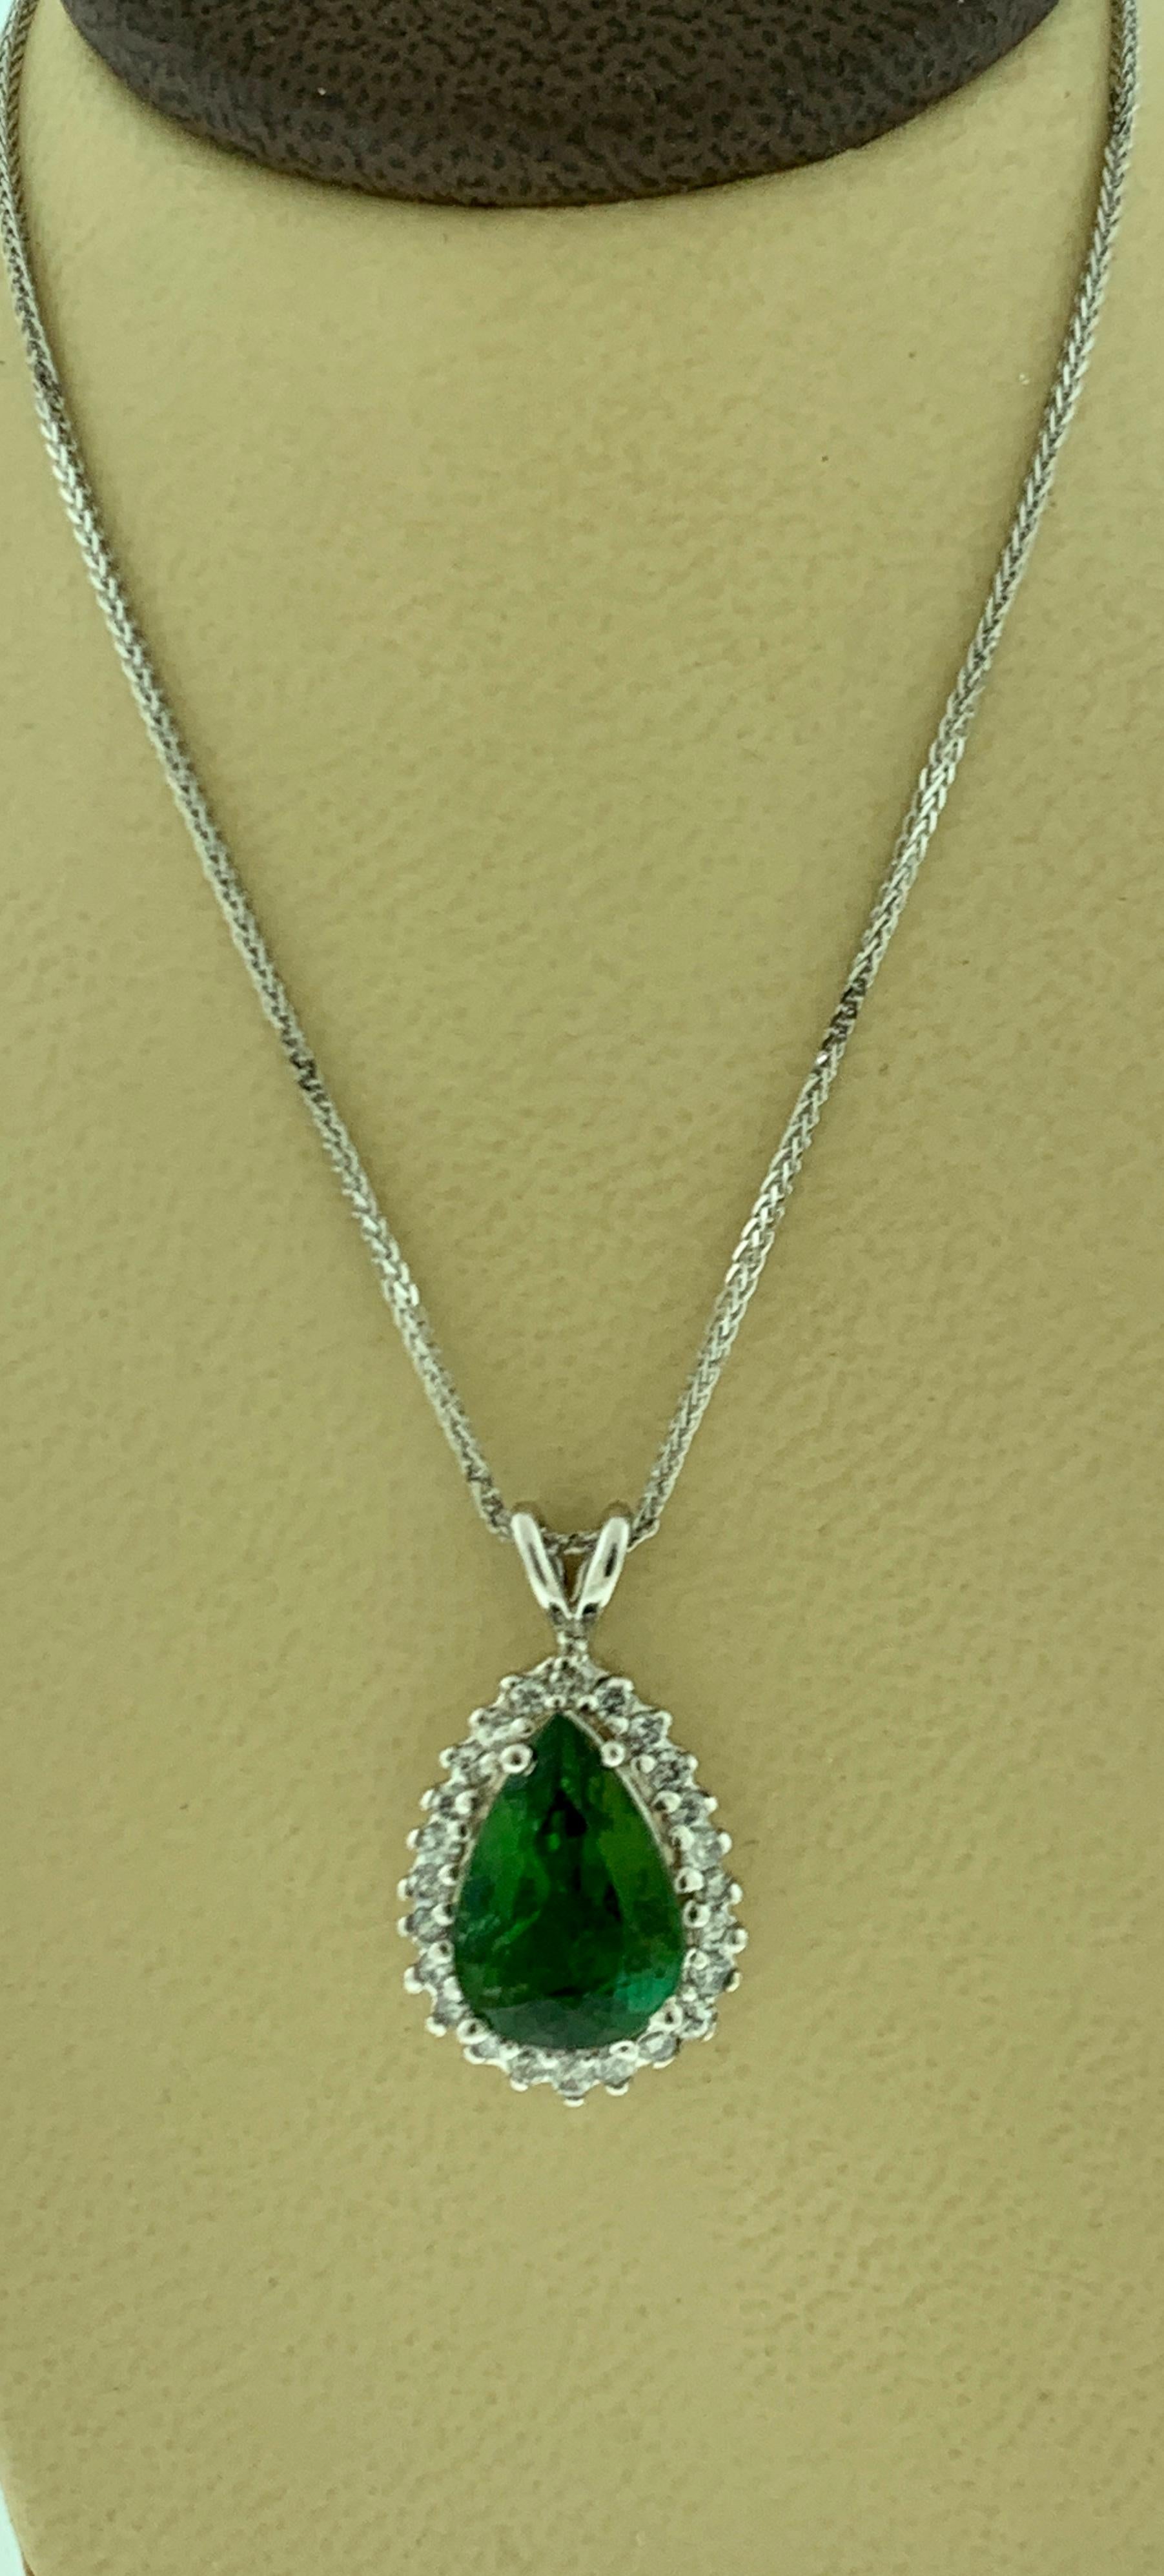 8 Carat Green Tourmaline and 1.5 Carat Diamond Pendant or Necklace 14 Karat Gold 4